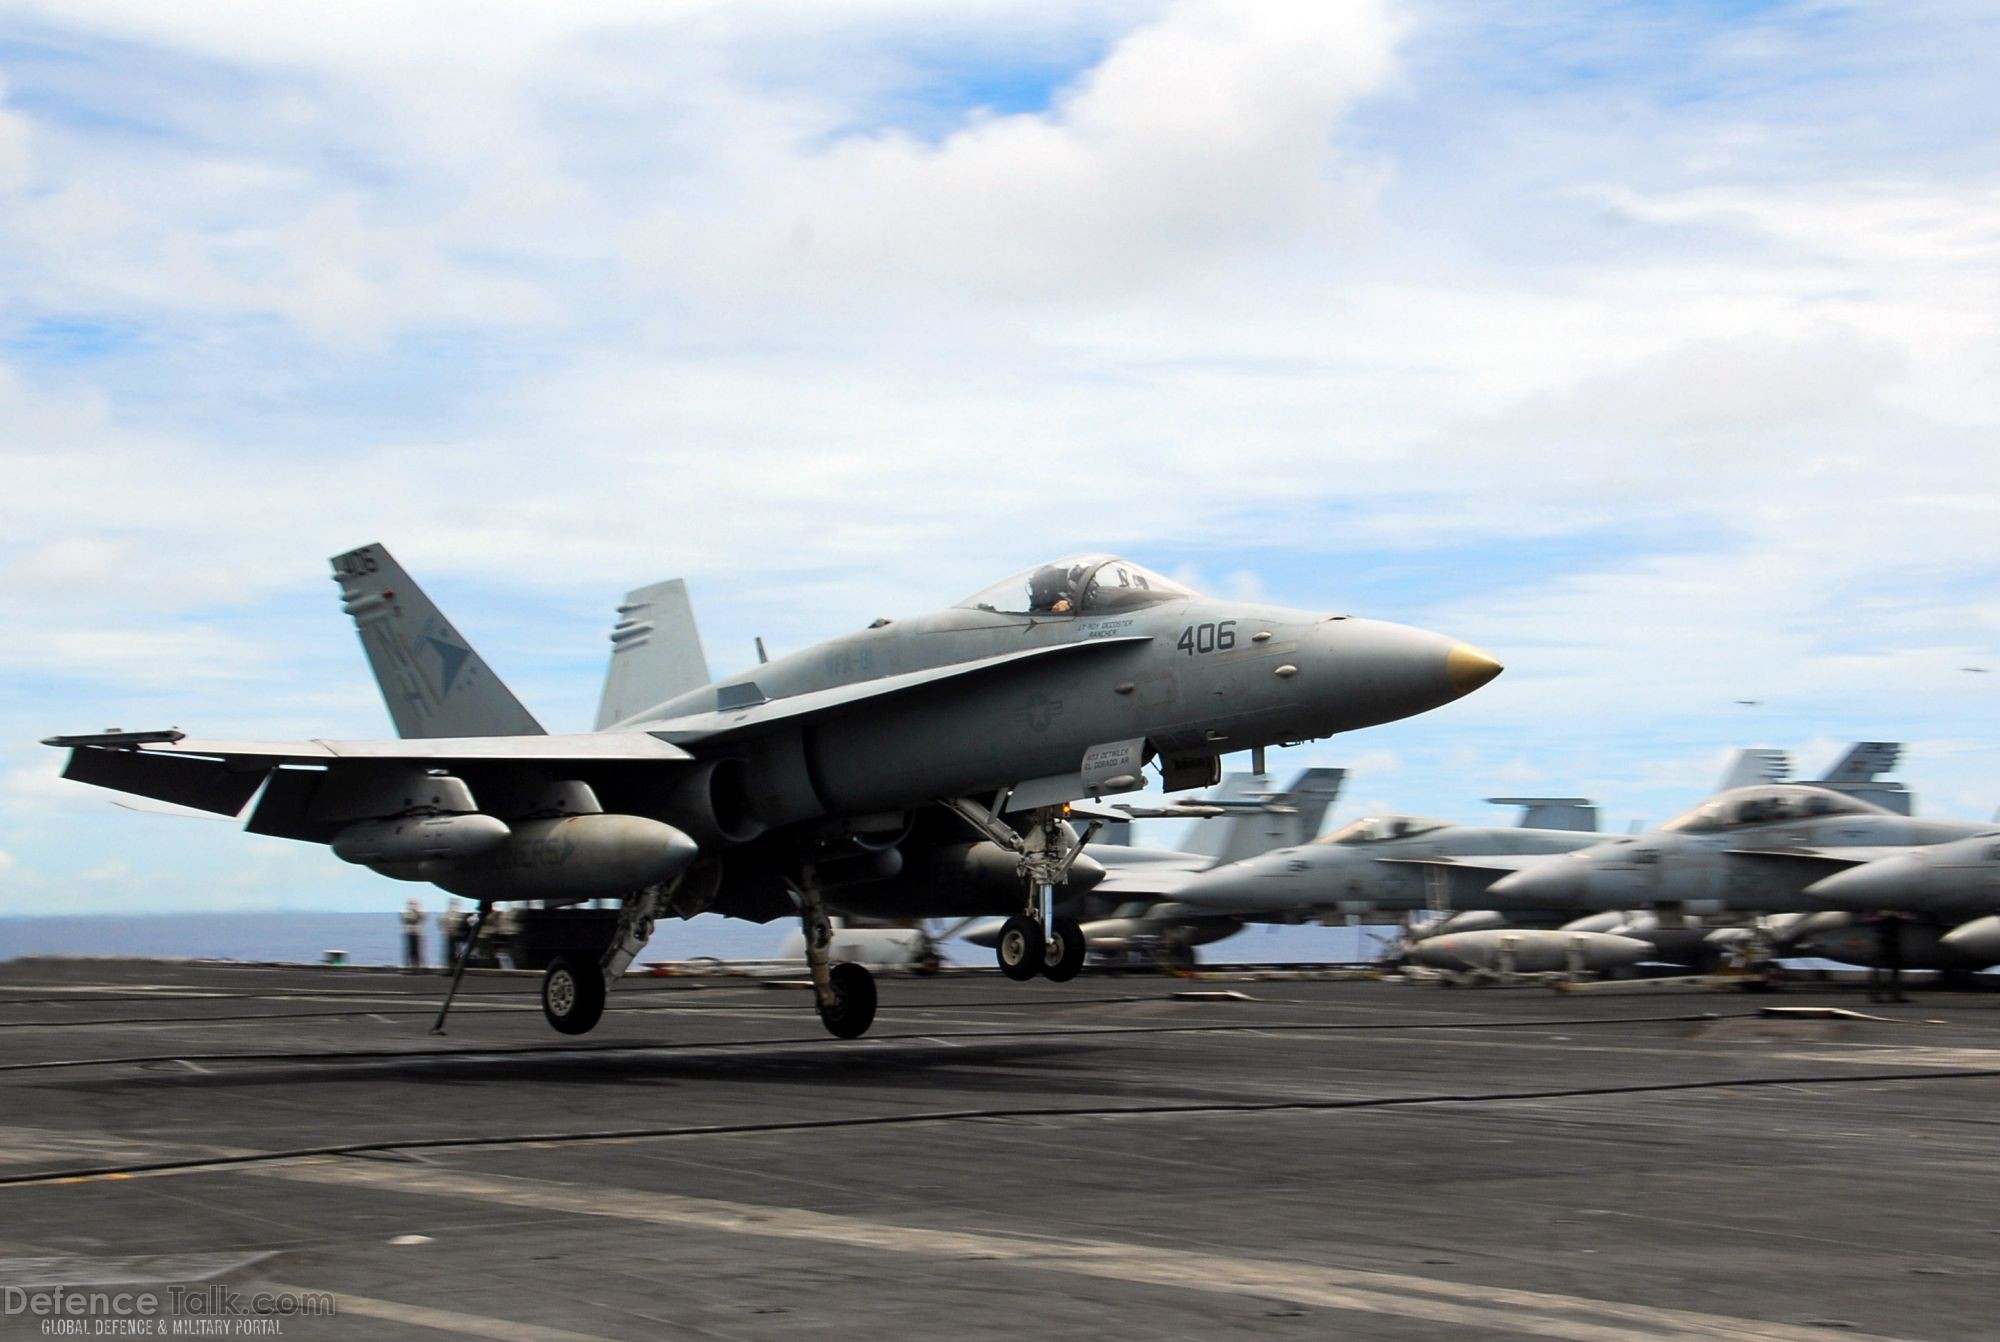 F/A-18C Hornet lands on aircraft carrier